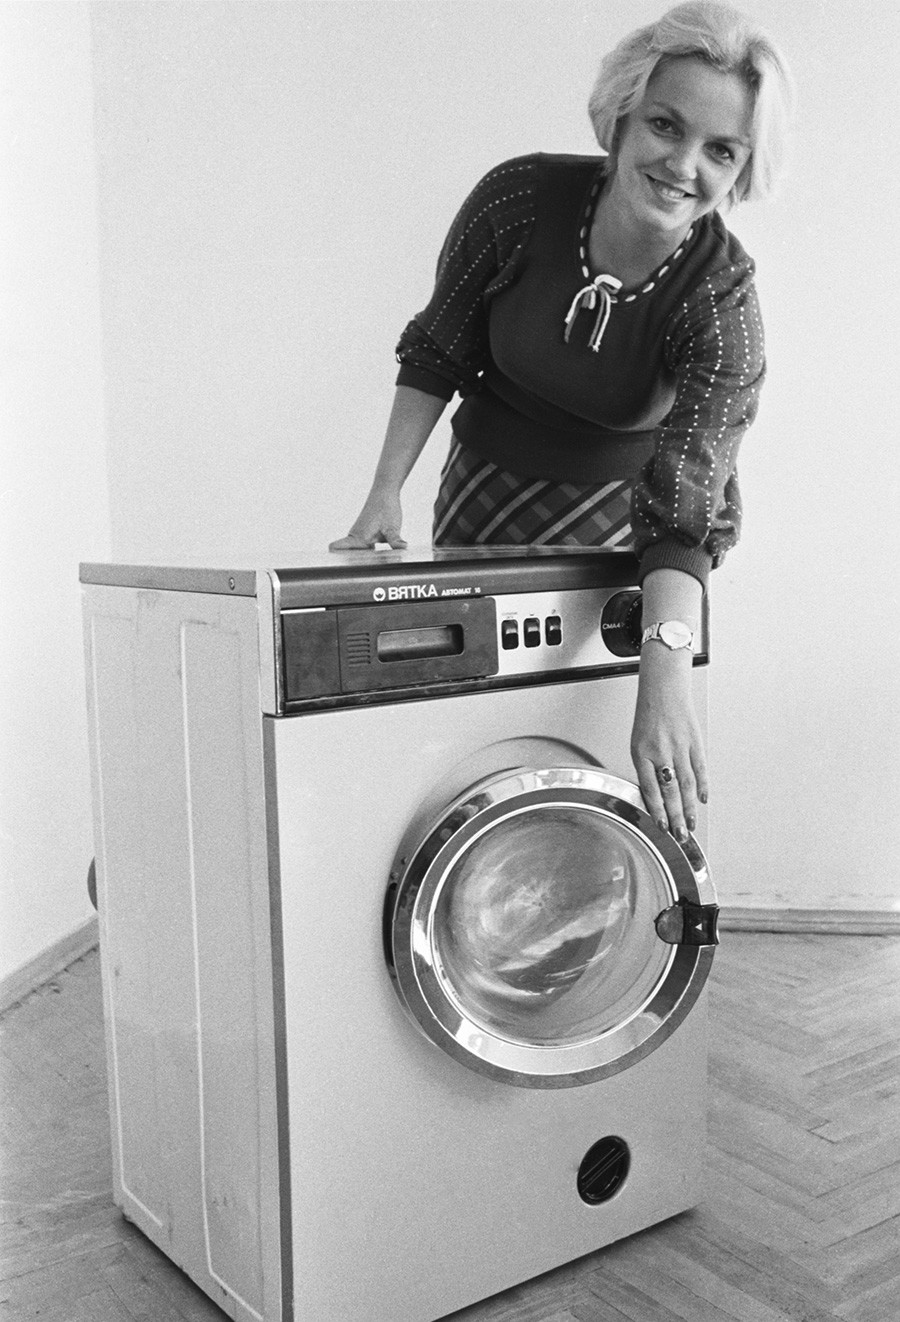 洗濯機「ヴャトカ全自動」、1978年